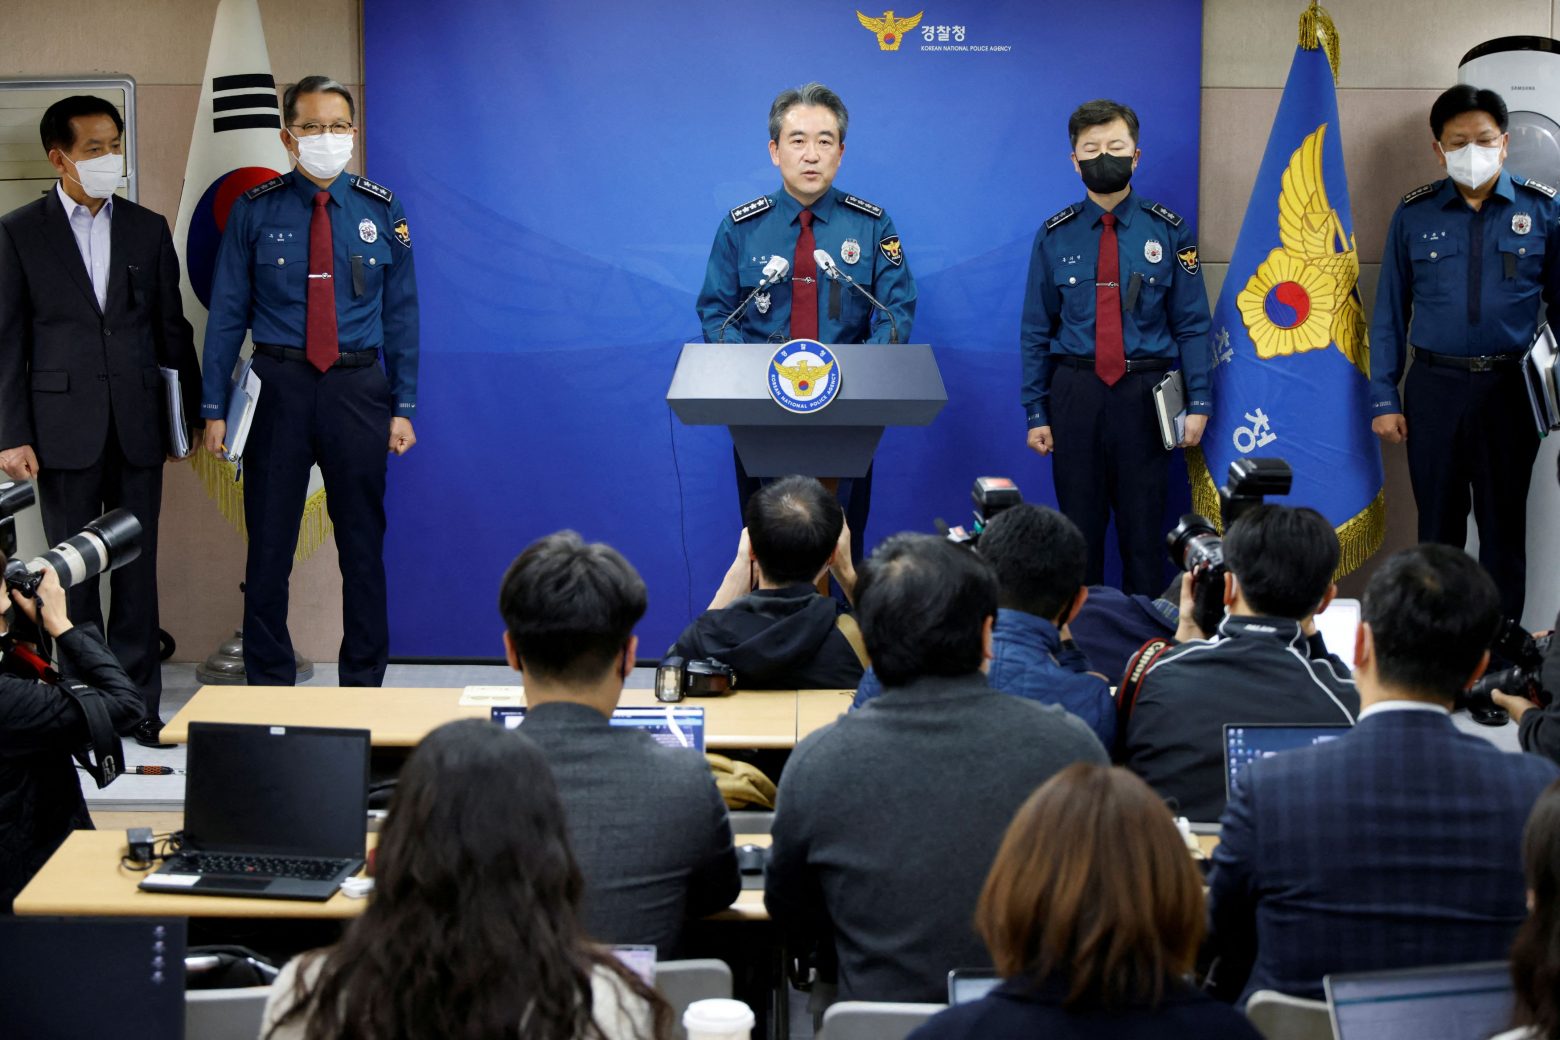 Σεούλ: Ο αρχηγός της αστυνομίας παραδέχθηκε «ανεπάρκεια μέτρων» στην τοποθεσία του ποδοπατήματος - 156 οι νεκροί